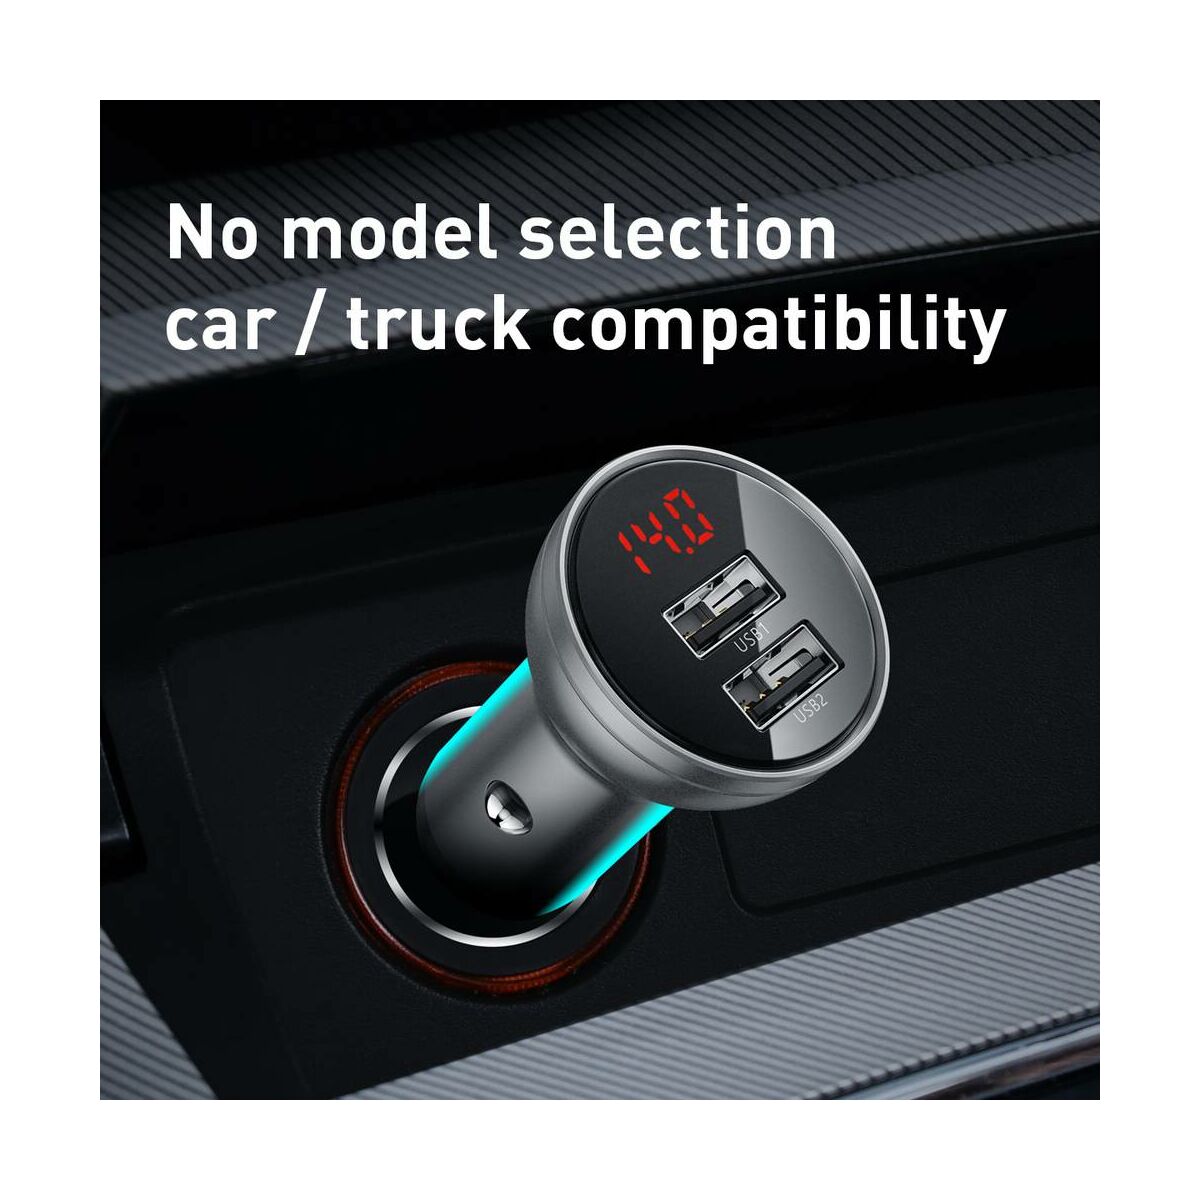 Baseus autós töltő, Digital Display Dual USB csatlakozás, digitális kijelzés, 24W 4.8A, ezüst (CCBX-0S)